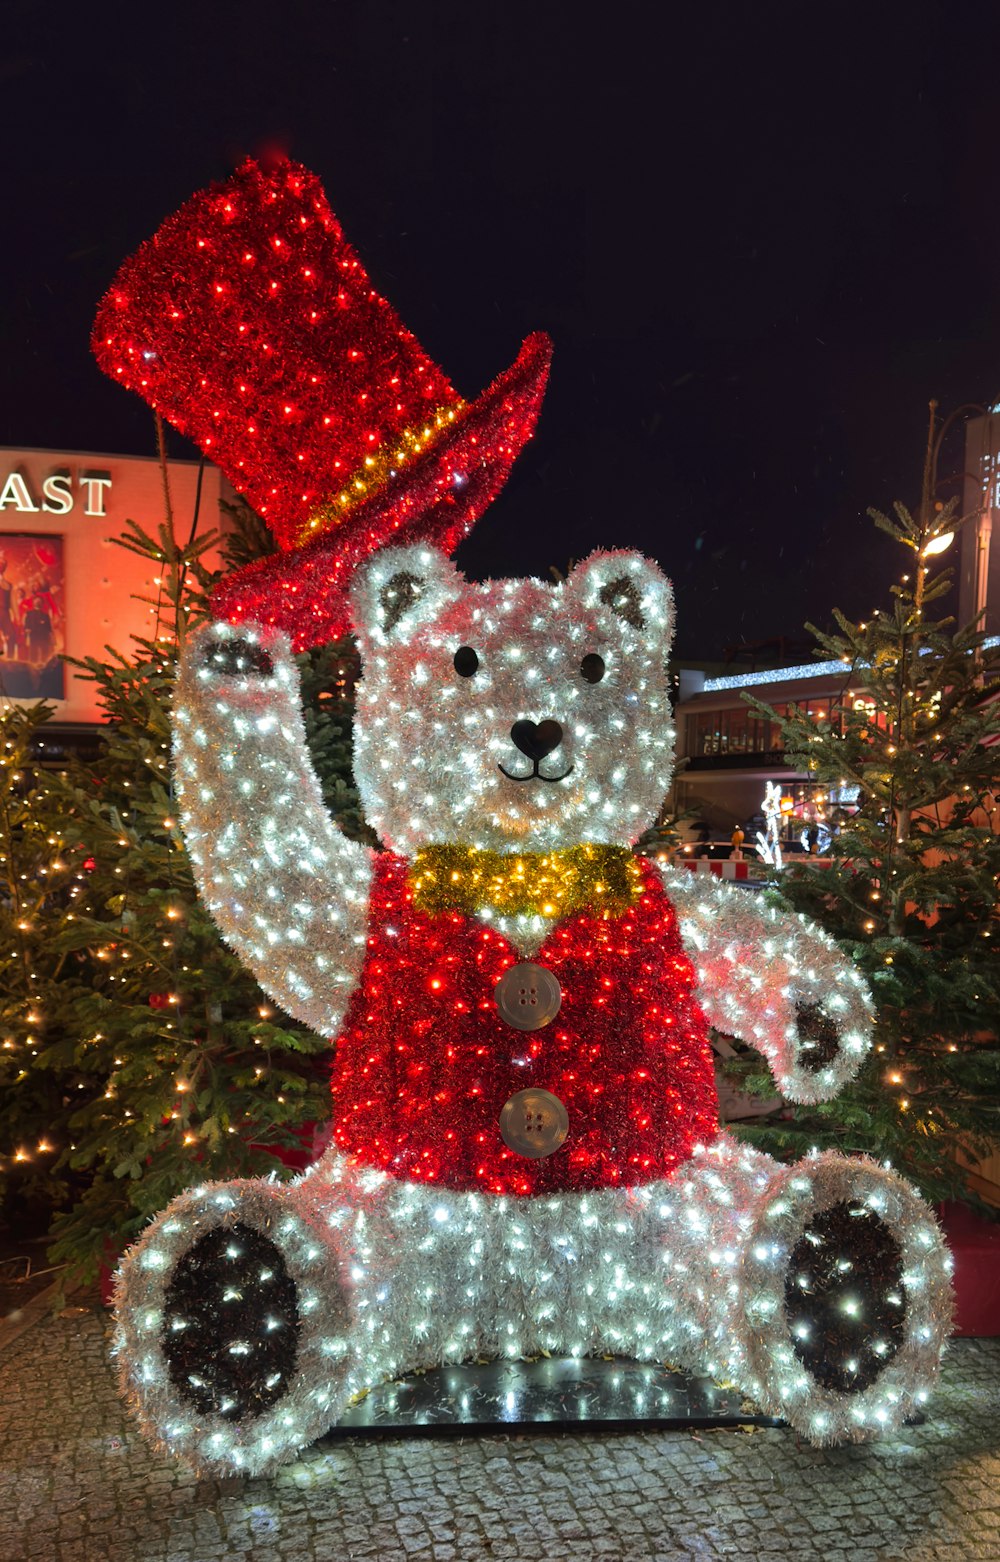 Una exhibición navideña de un oso de peluche con un sombrero de copa